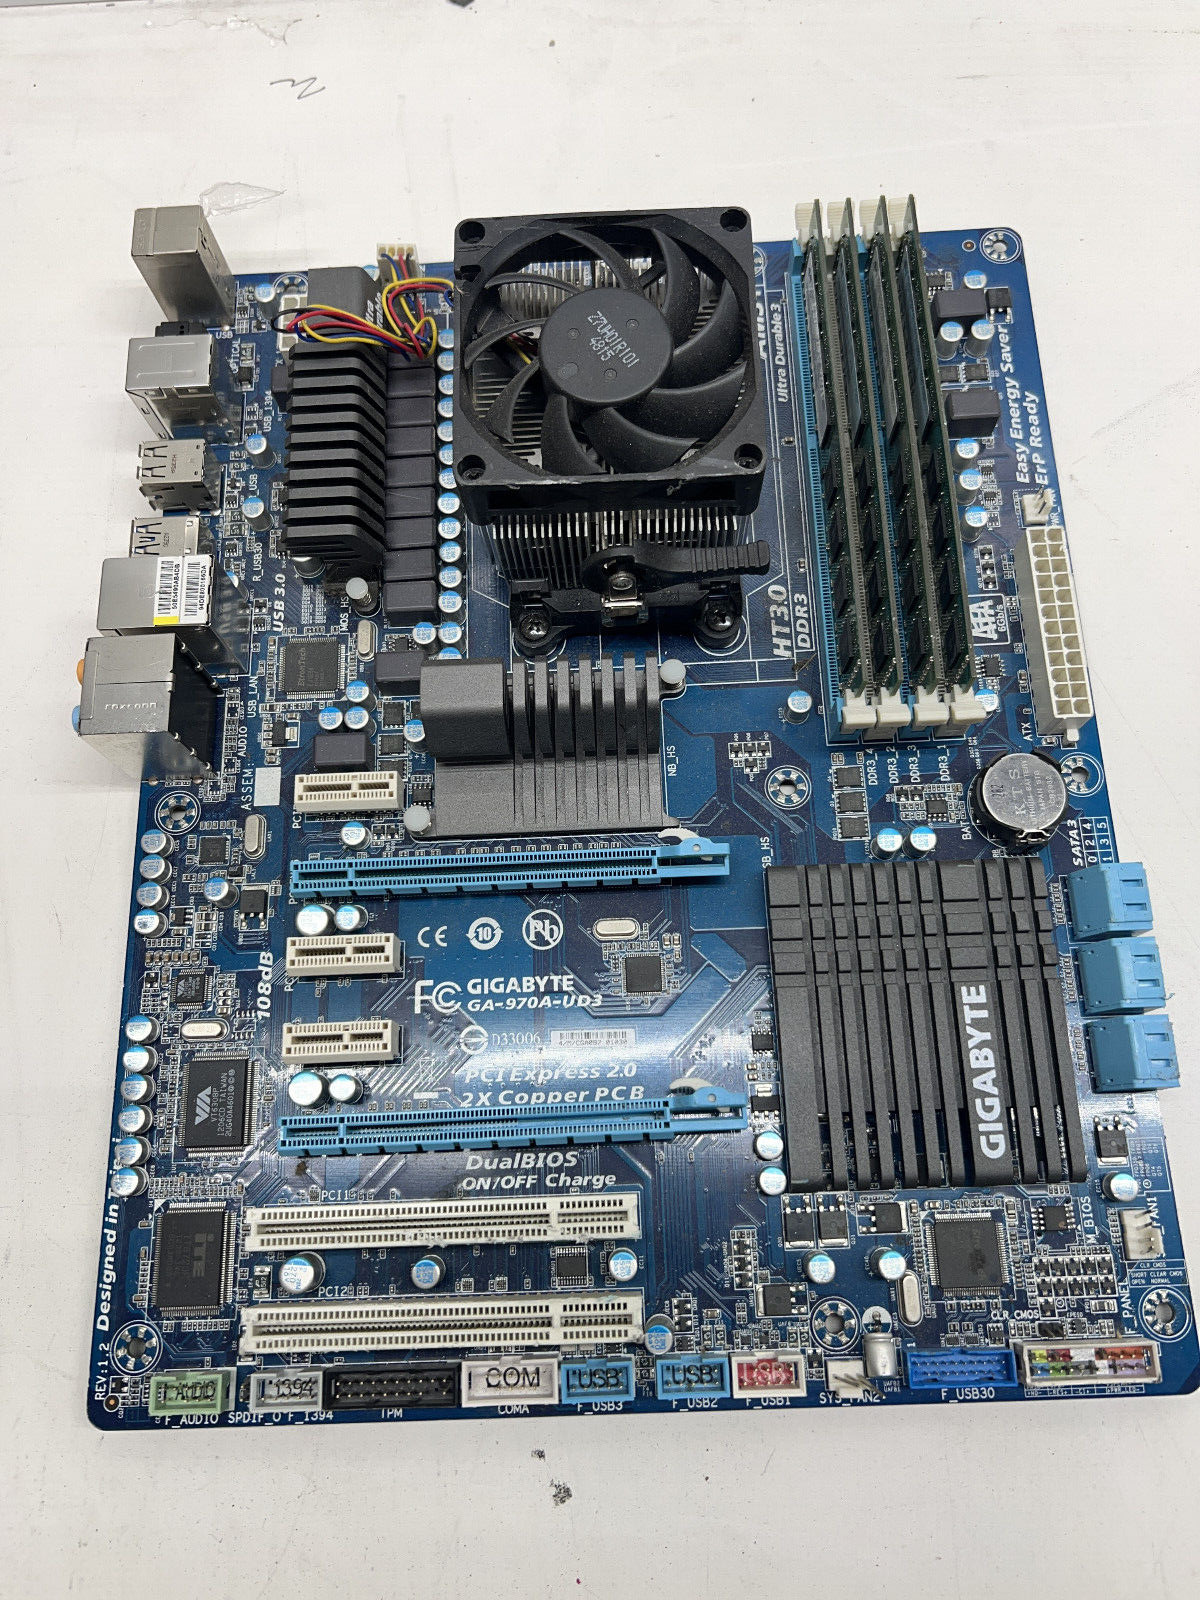 Gigabyte GA-970A-UD3 Socket AM3+ DDR3 SDRAM Motherboard w/ AMD FX 6300 & 8GB RAM